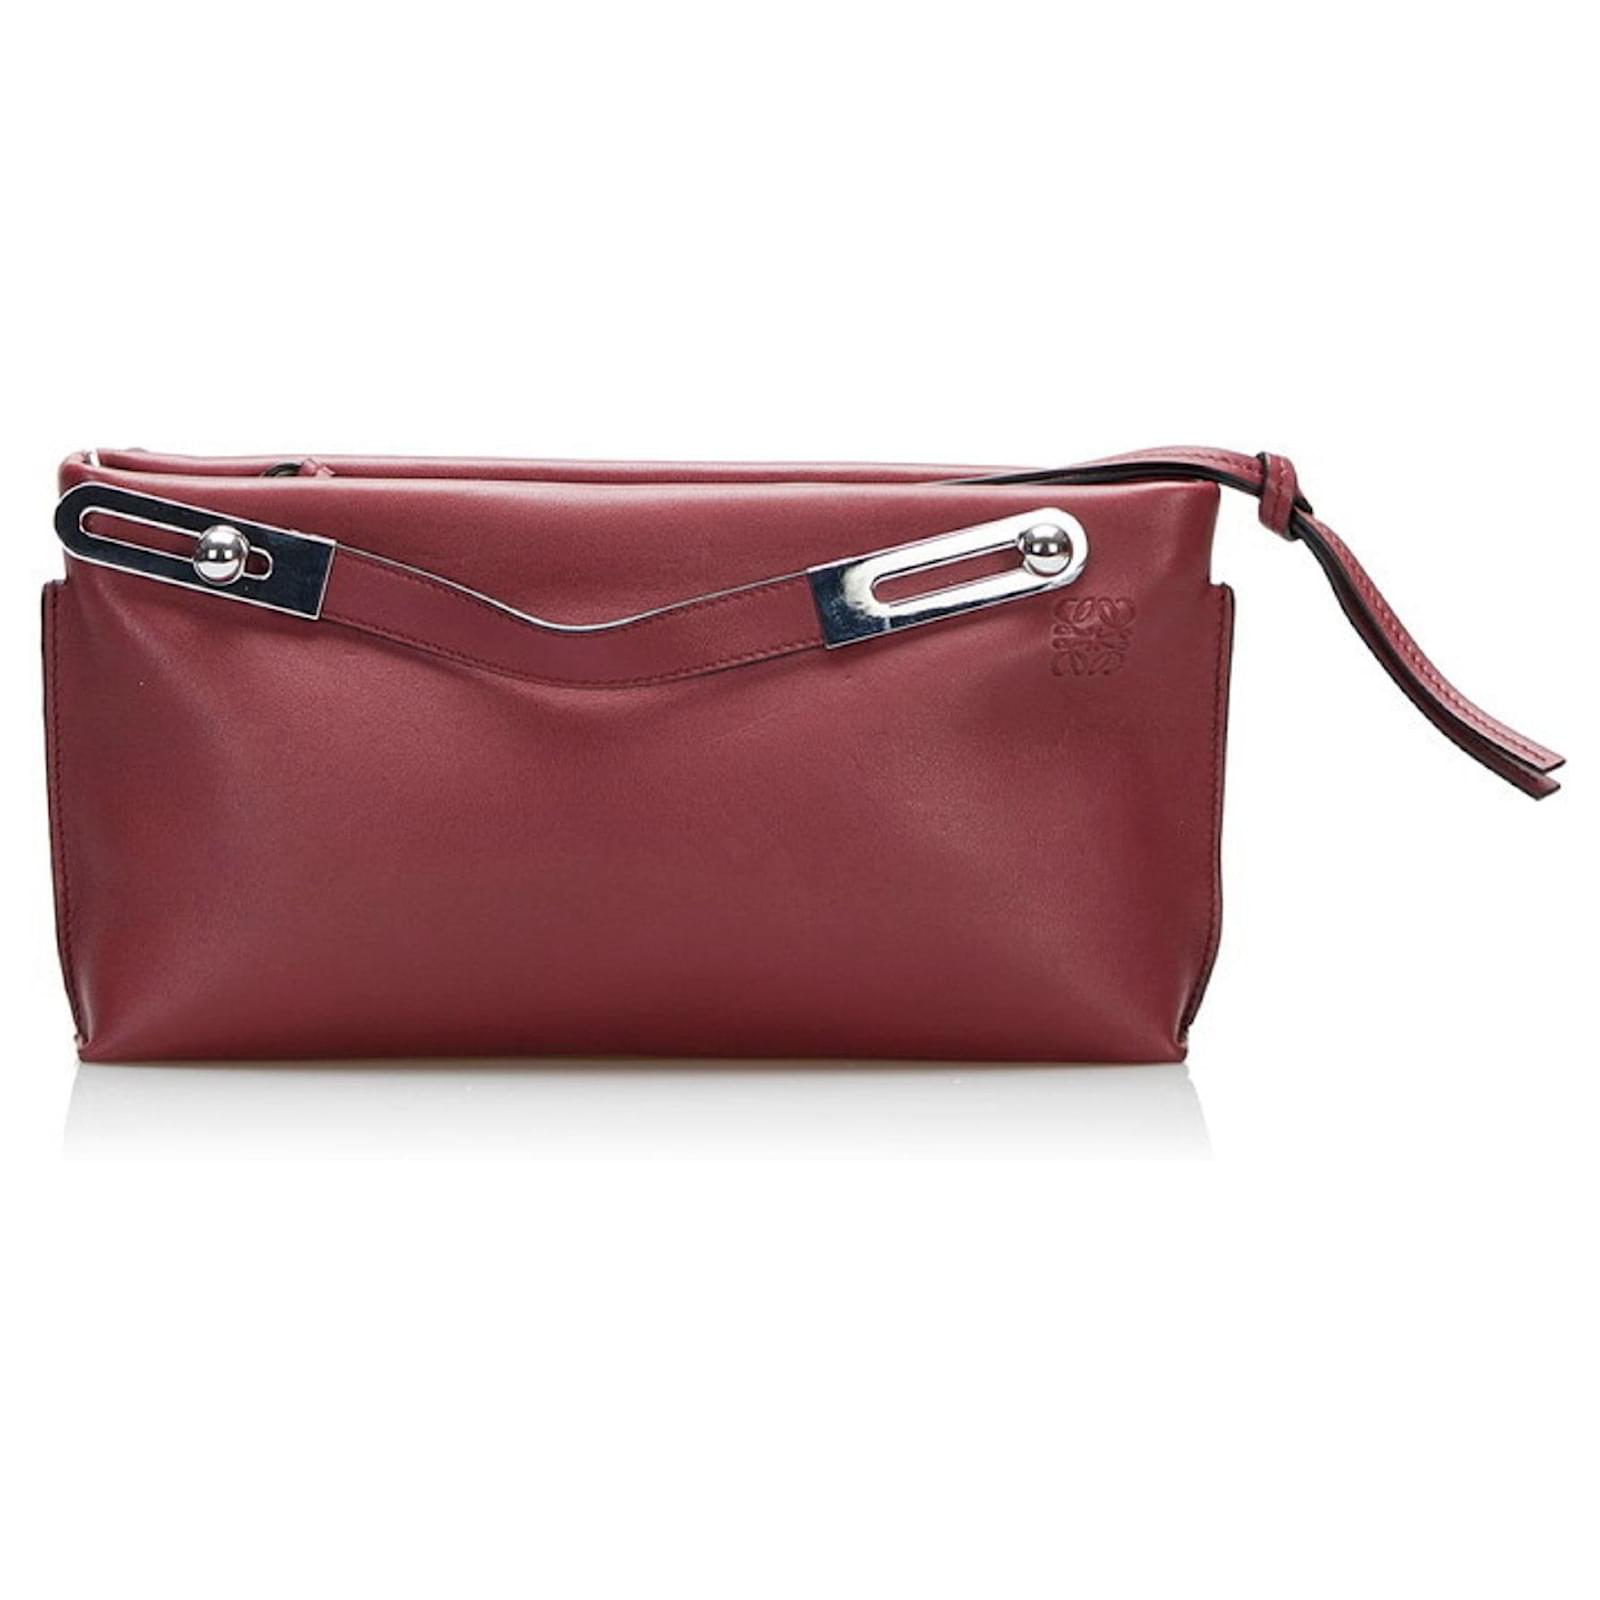 Loewe Missy Small Leather Handbag